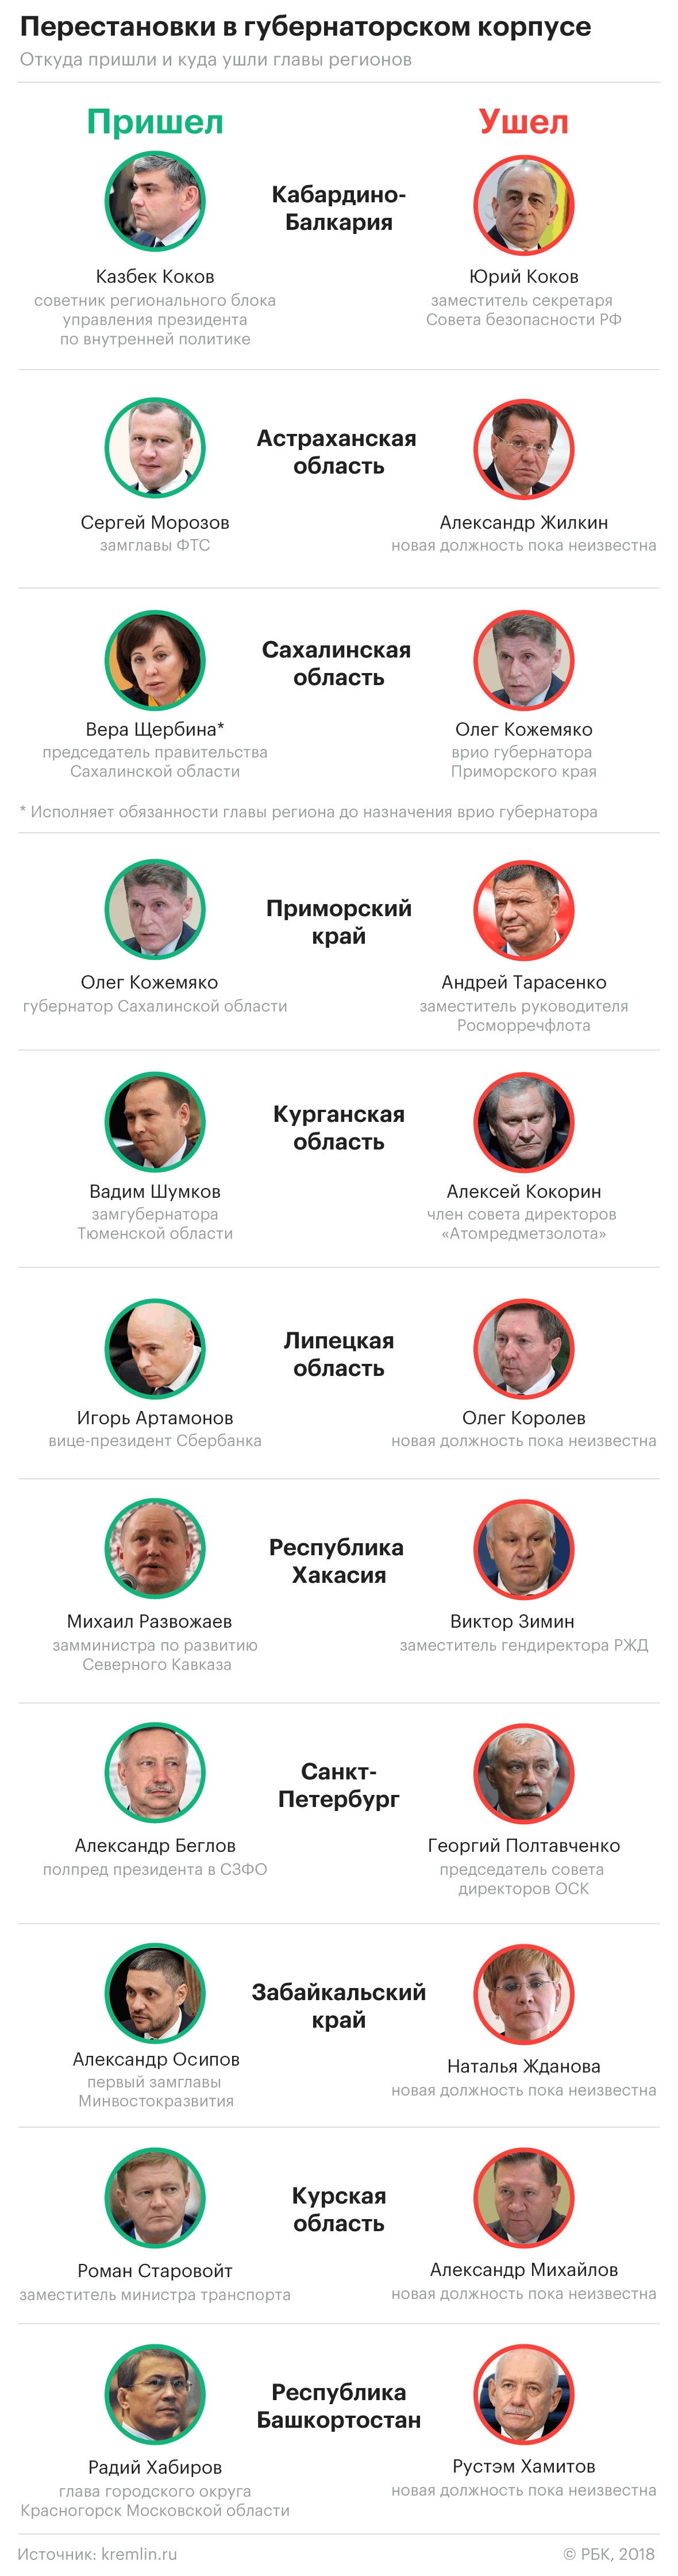 Путин назначил замминистра по делам Северного Кавказа главой Хакасии